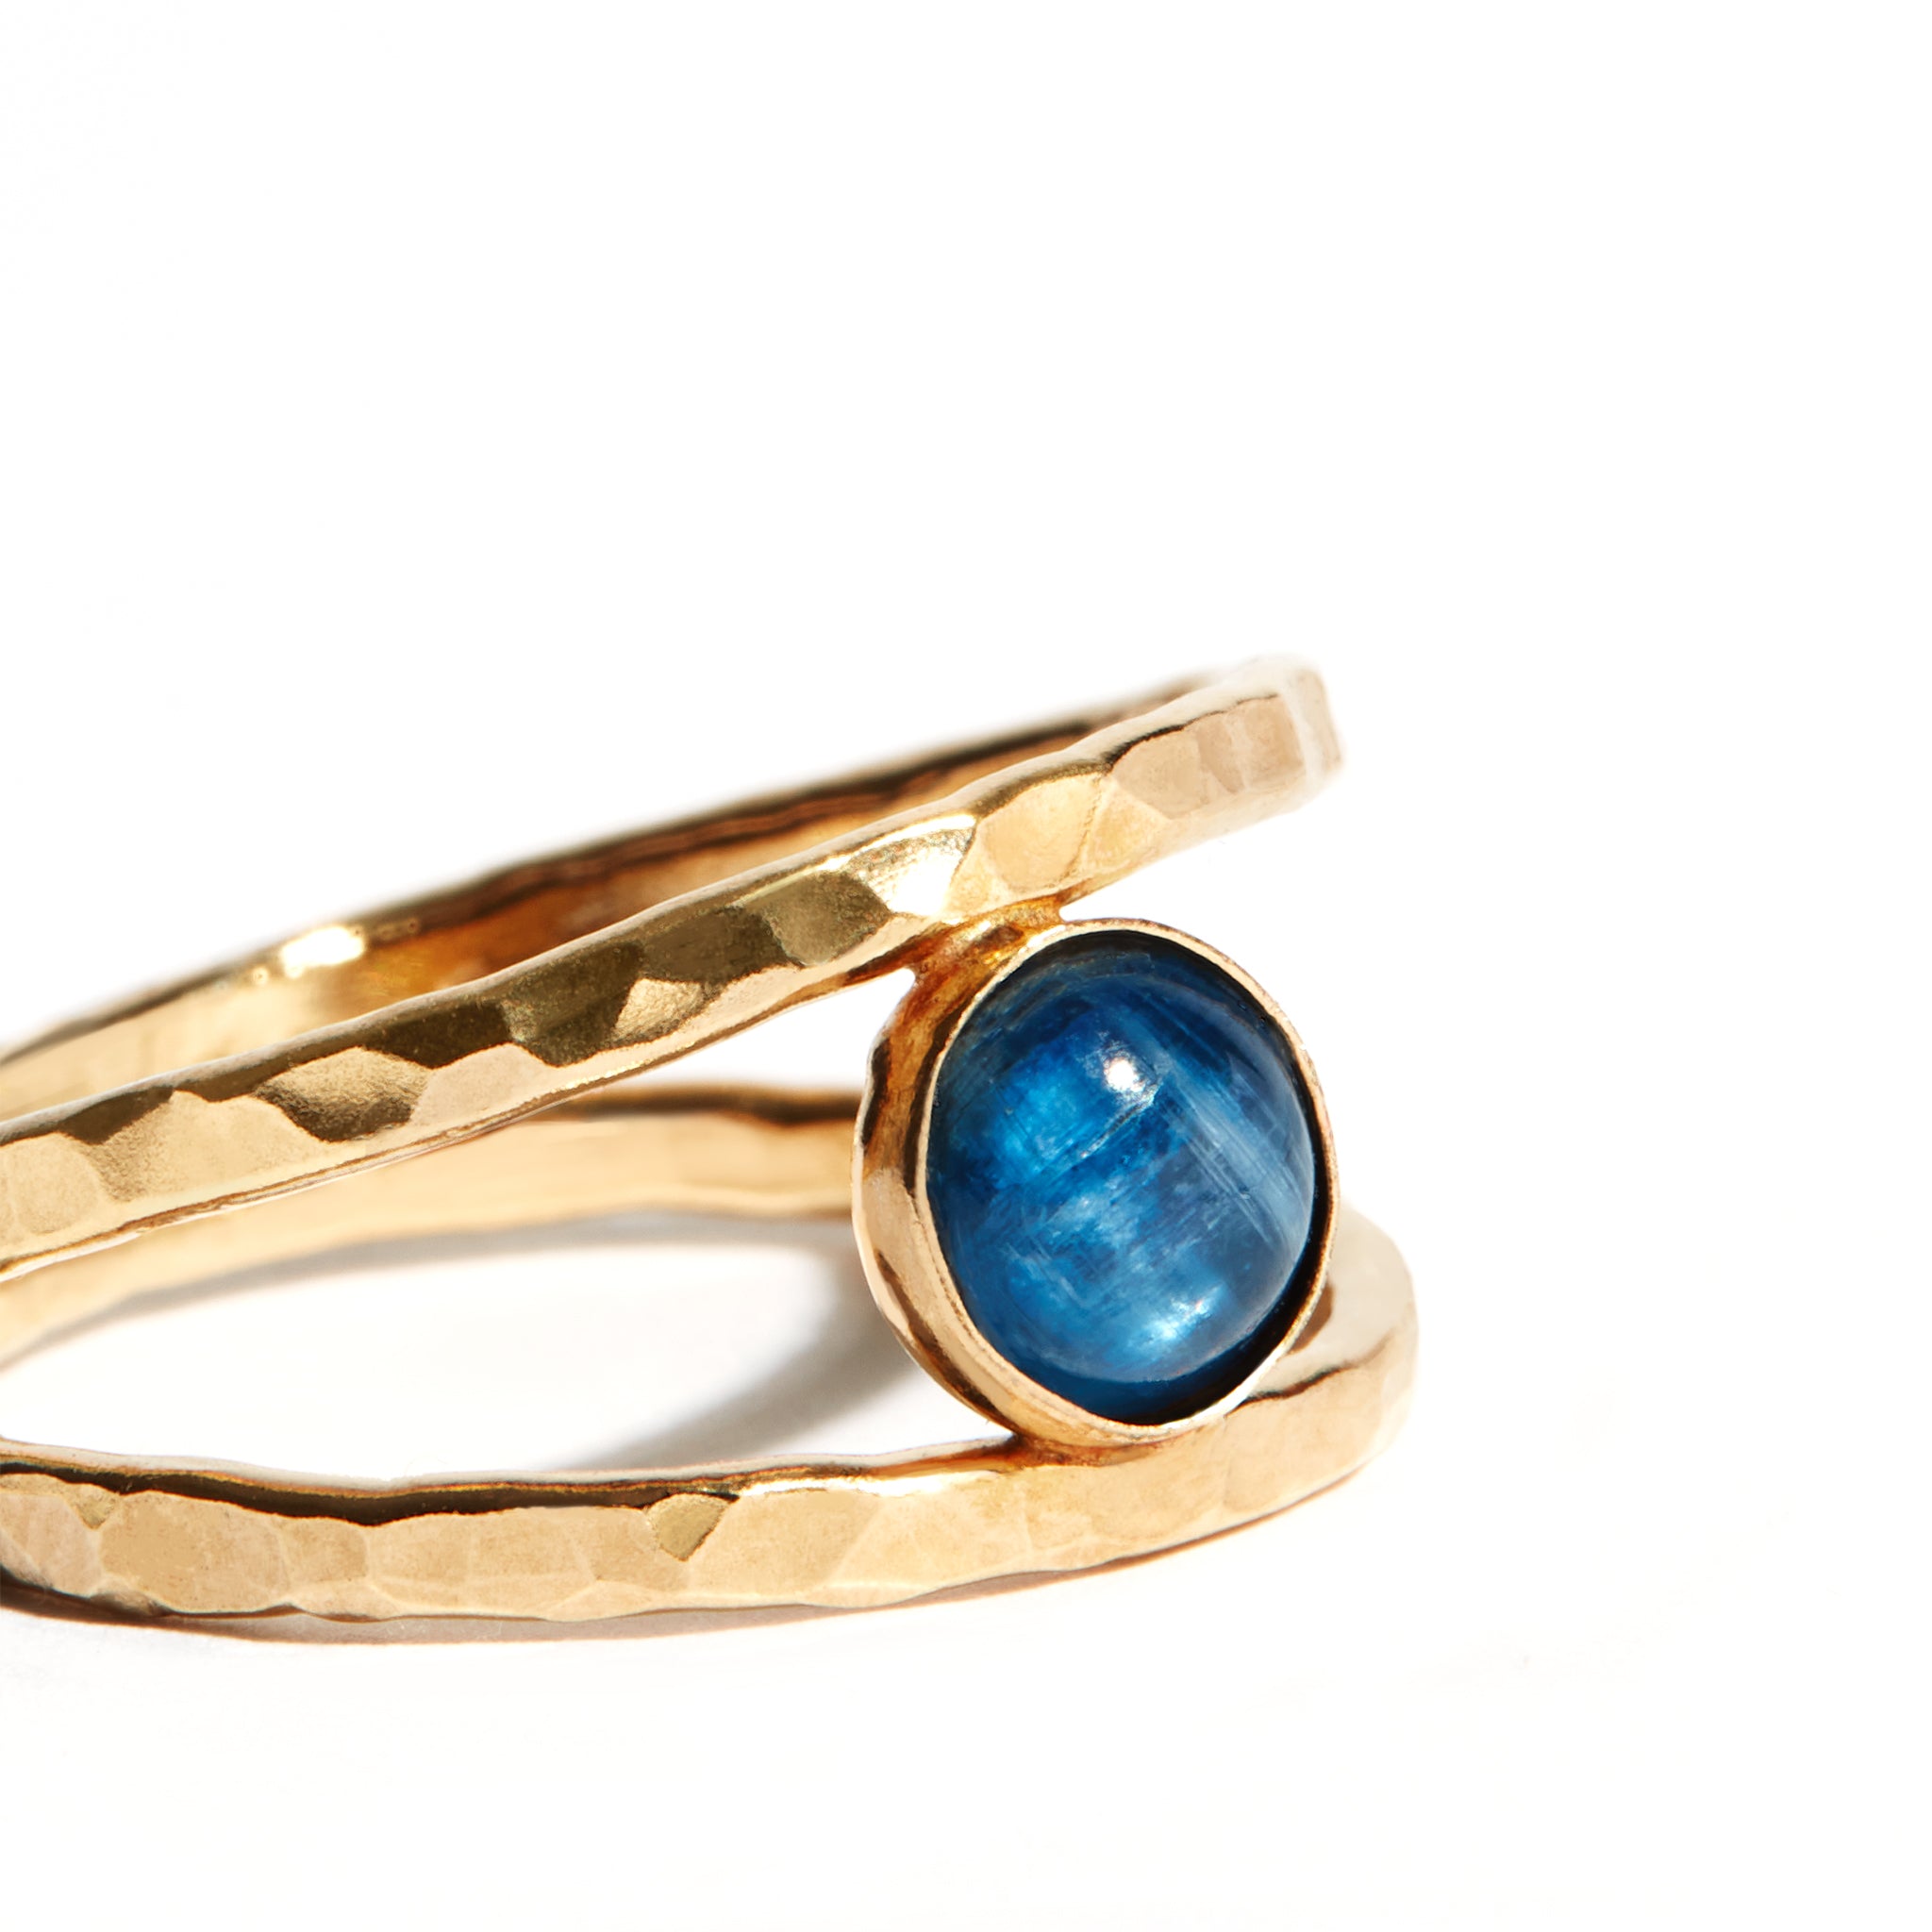 Wonderful 9kt to 10Kt White Gold & Blue Moonstone Ring, LOVELY Stone! | eBay